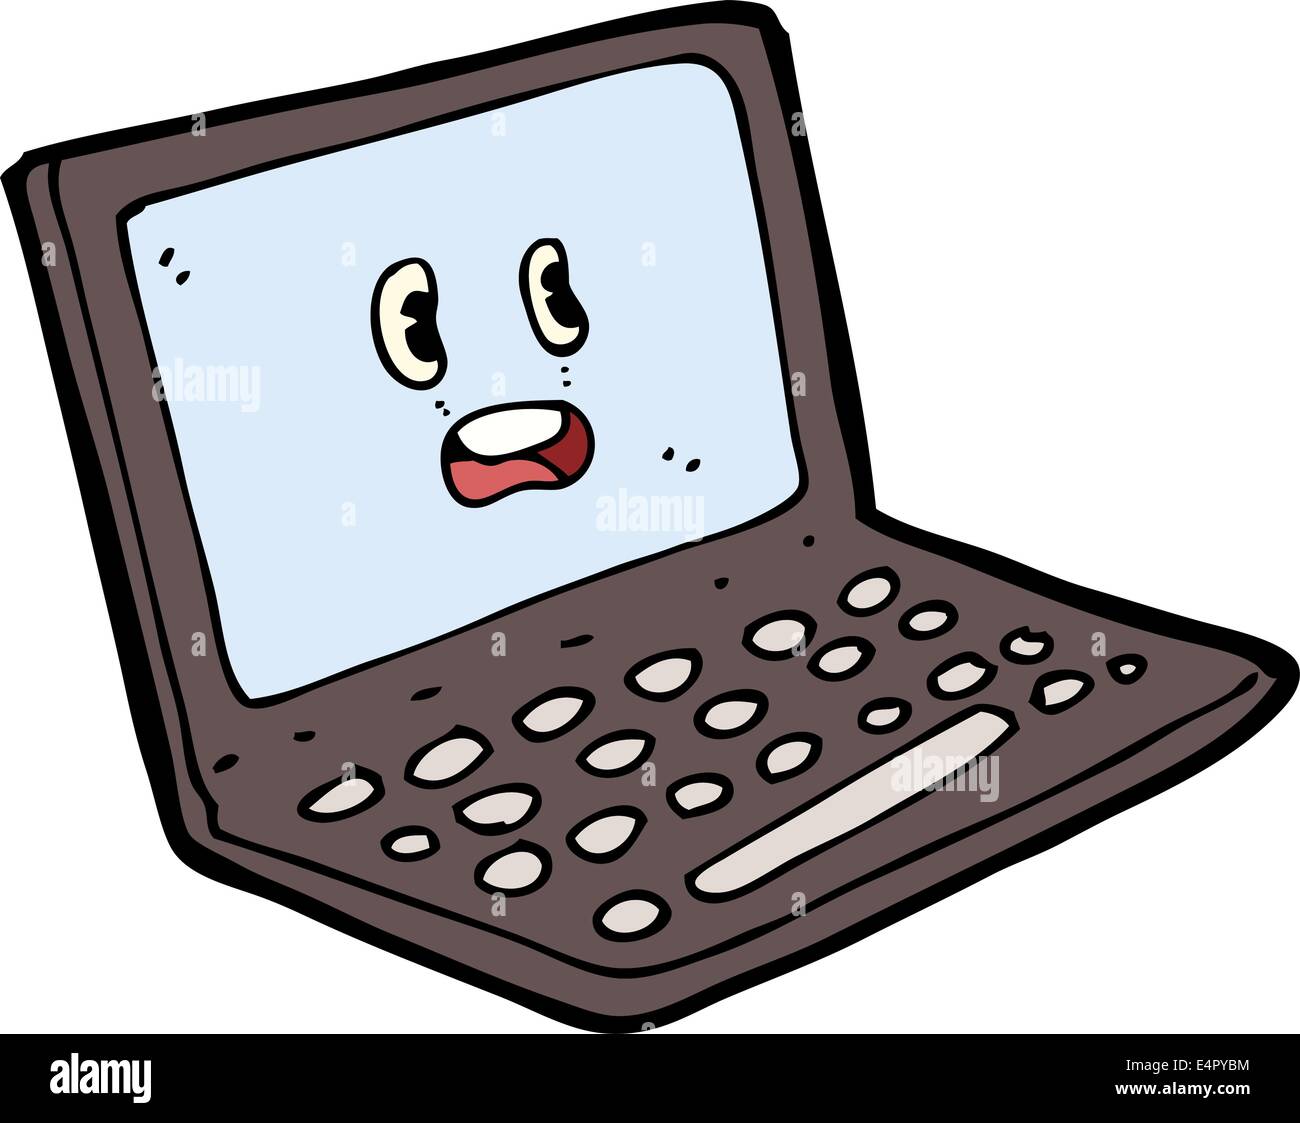 cartoon laptop computer Stock Vector Image & Art - Alamy